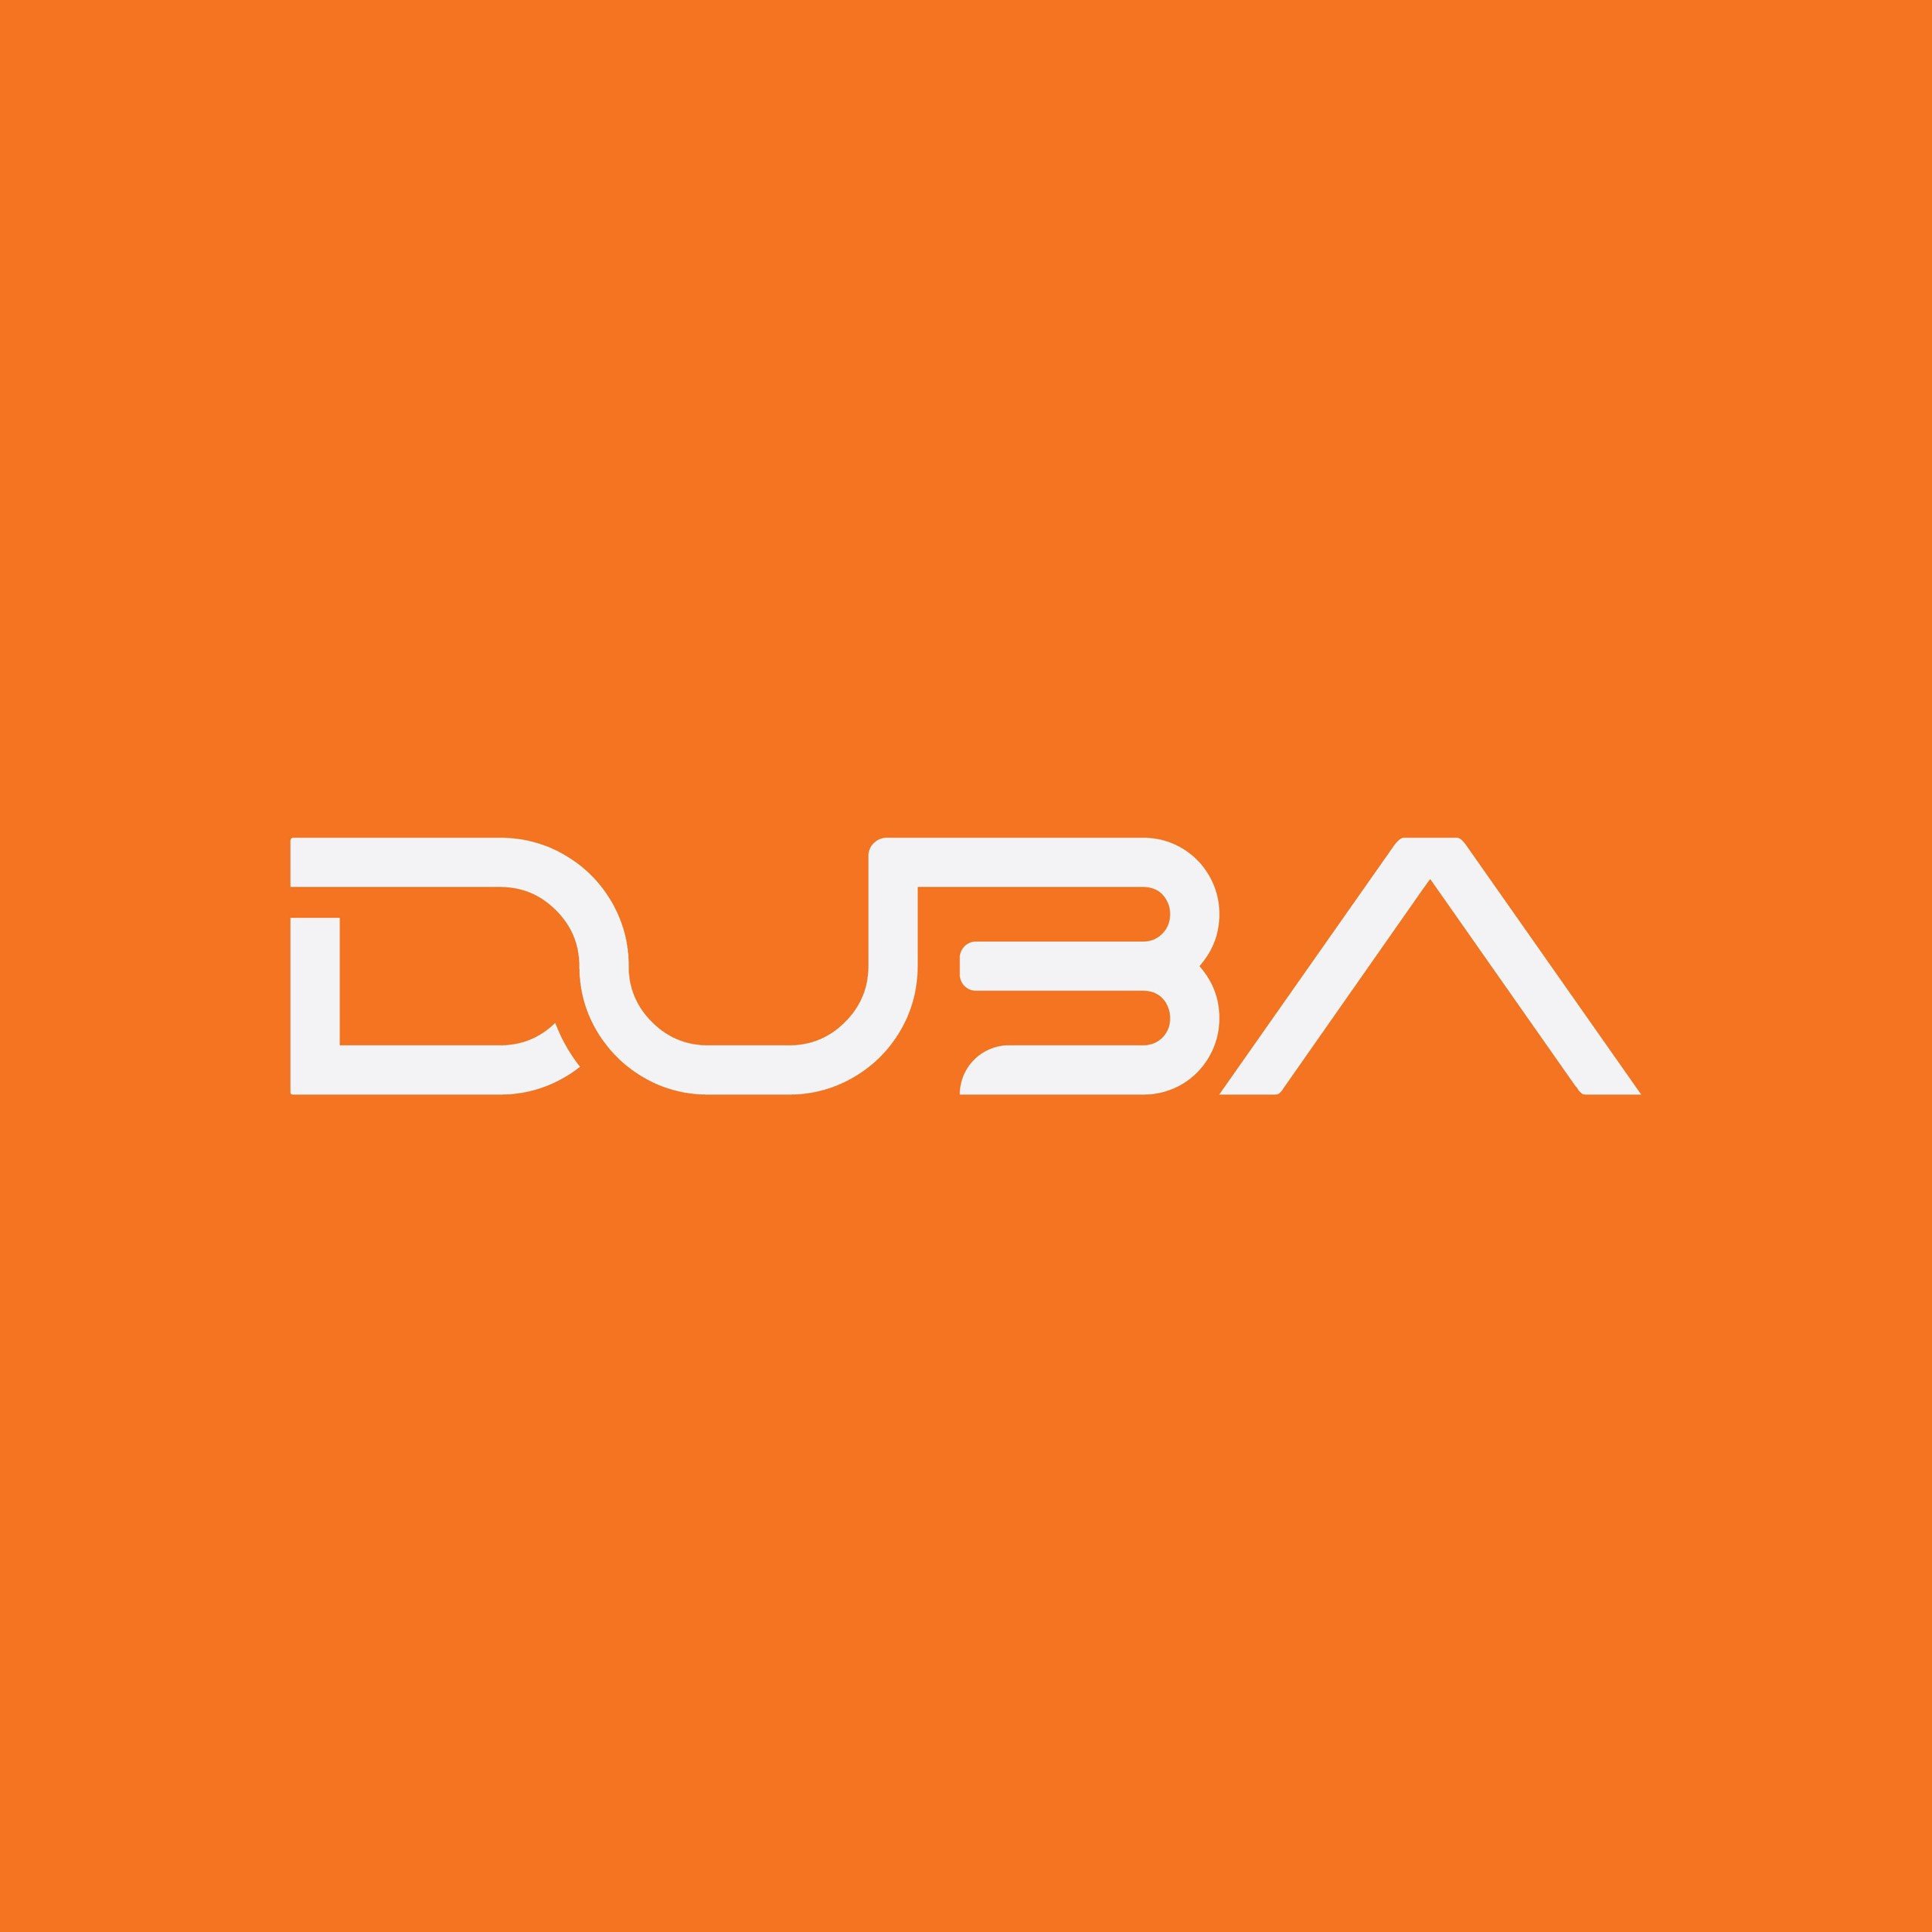 DUBA Official